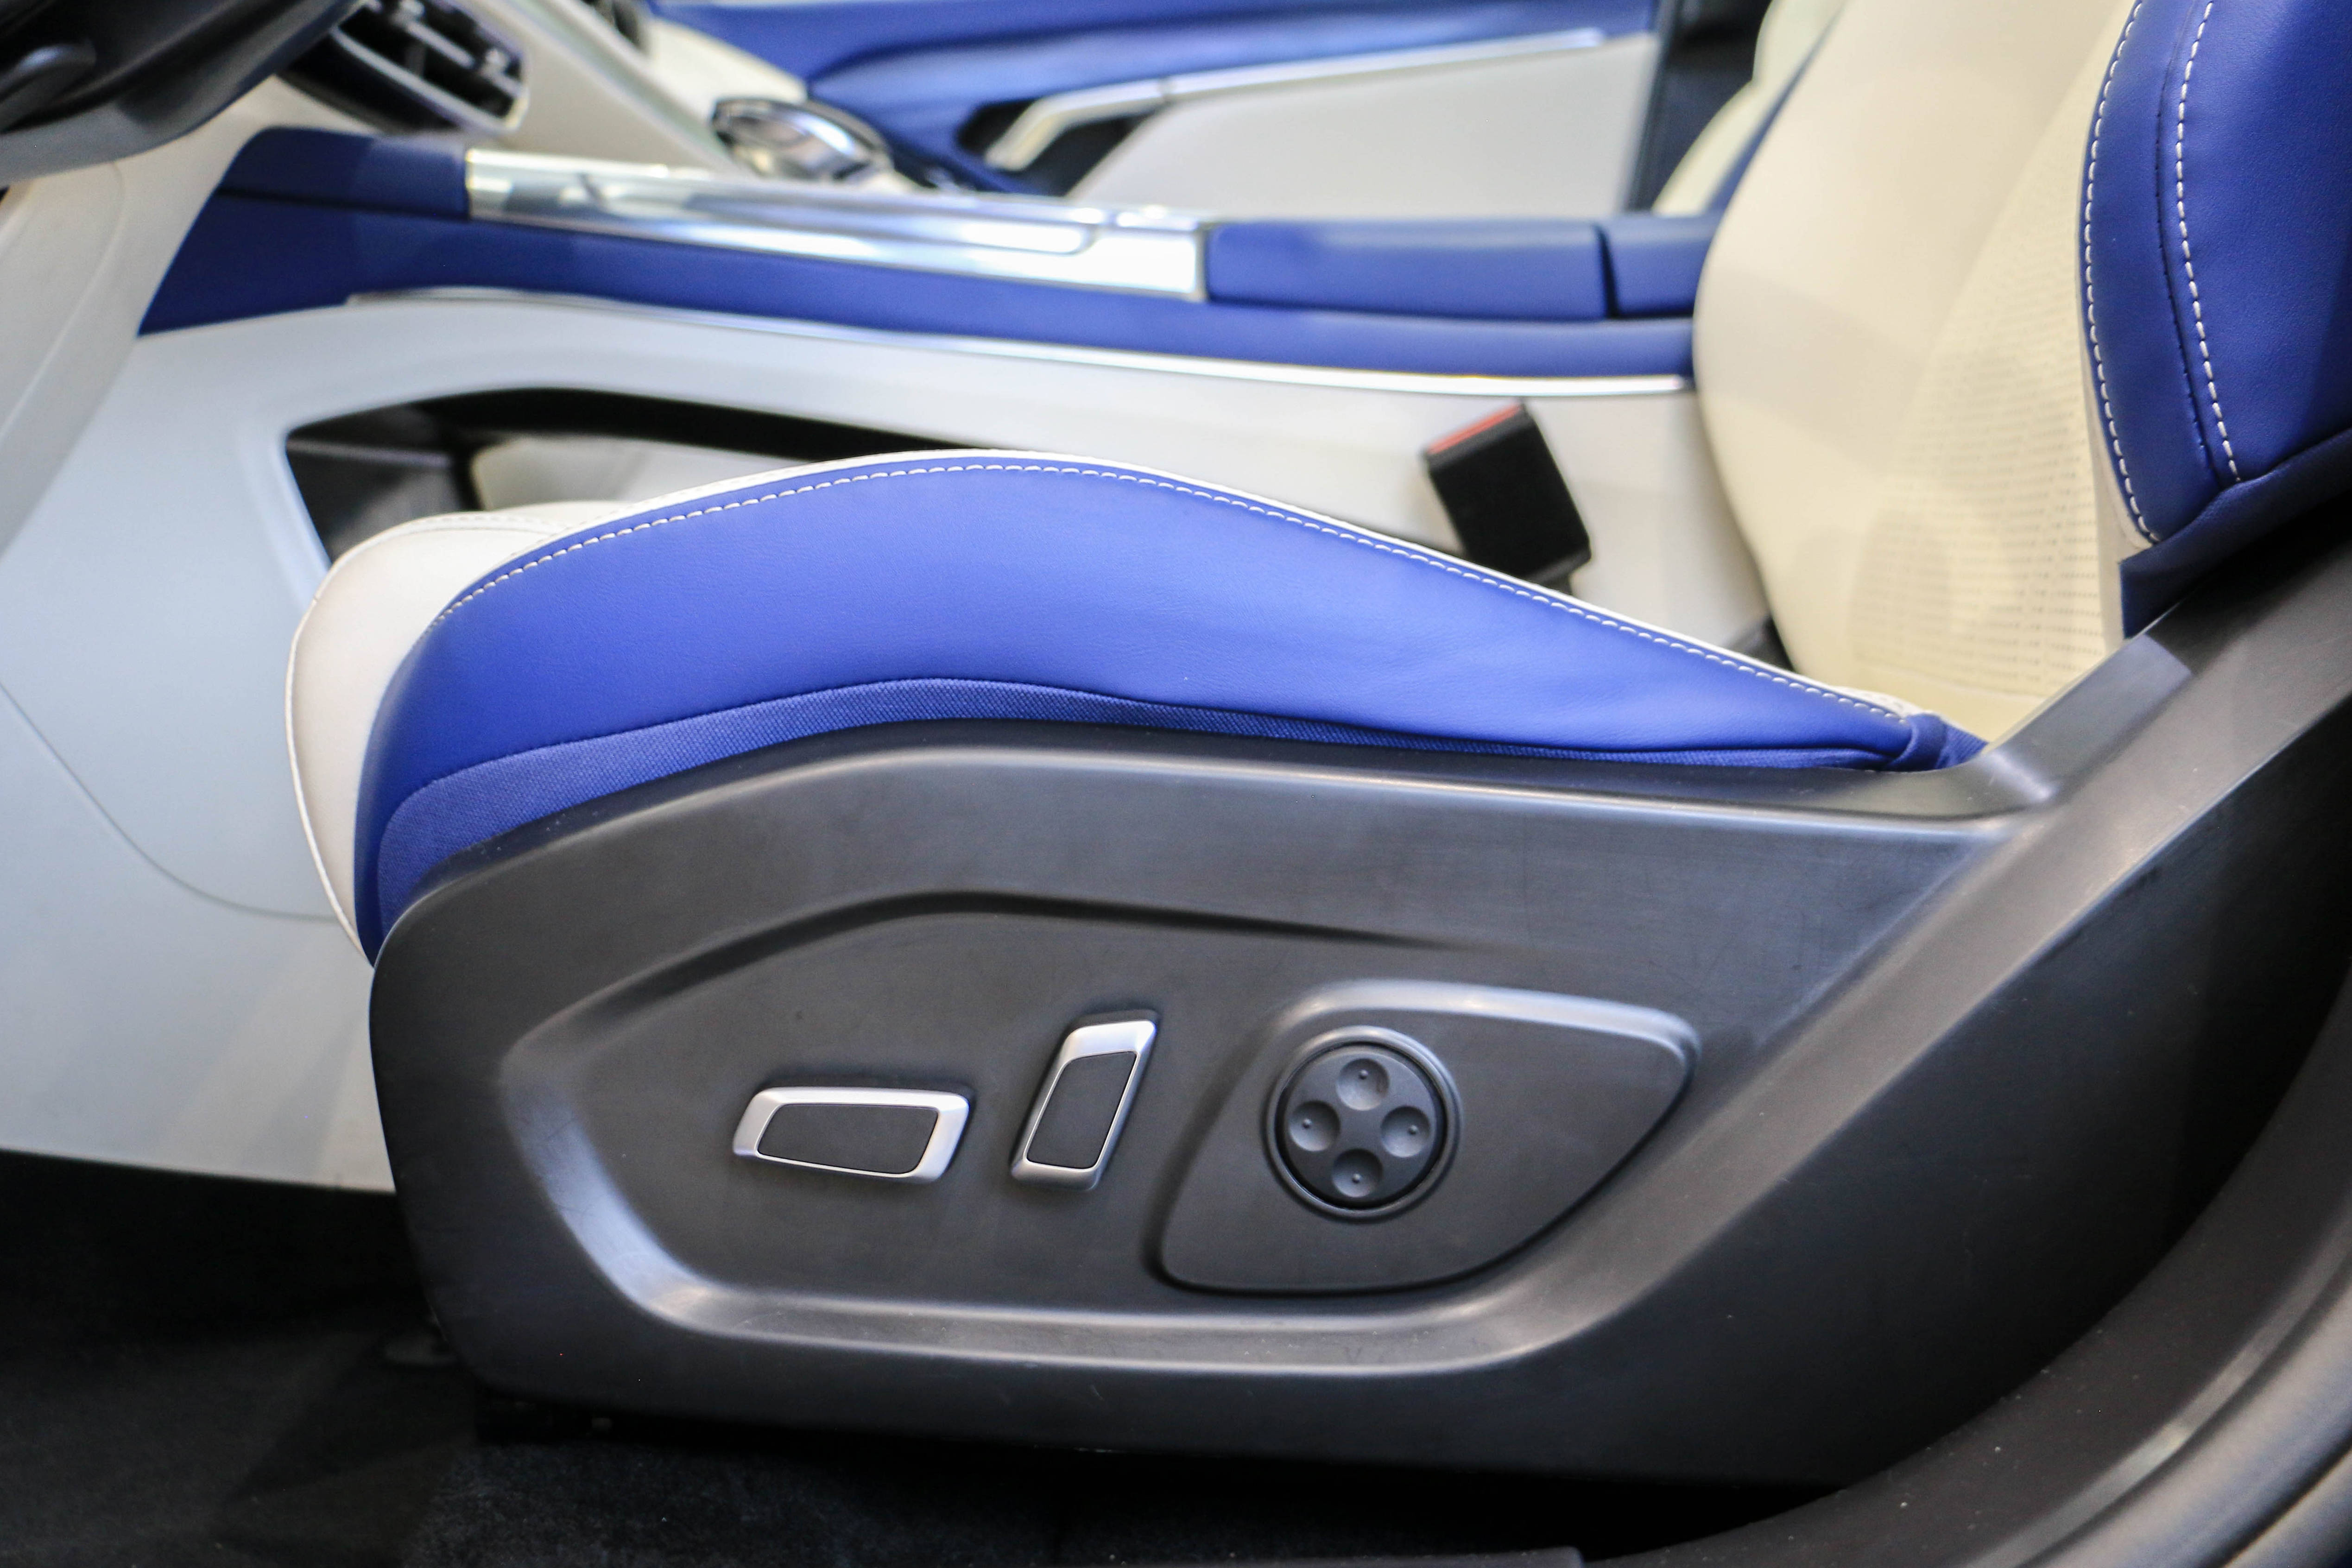 岚图free提供座前排椅电动调节,座椅加热/通风/按摩功能,驾驶位支持